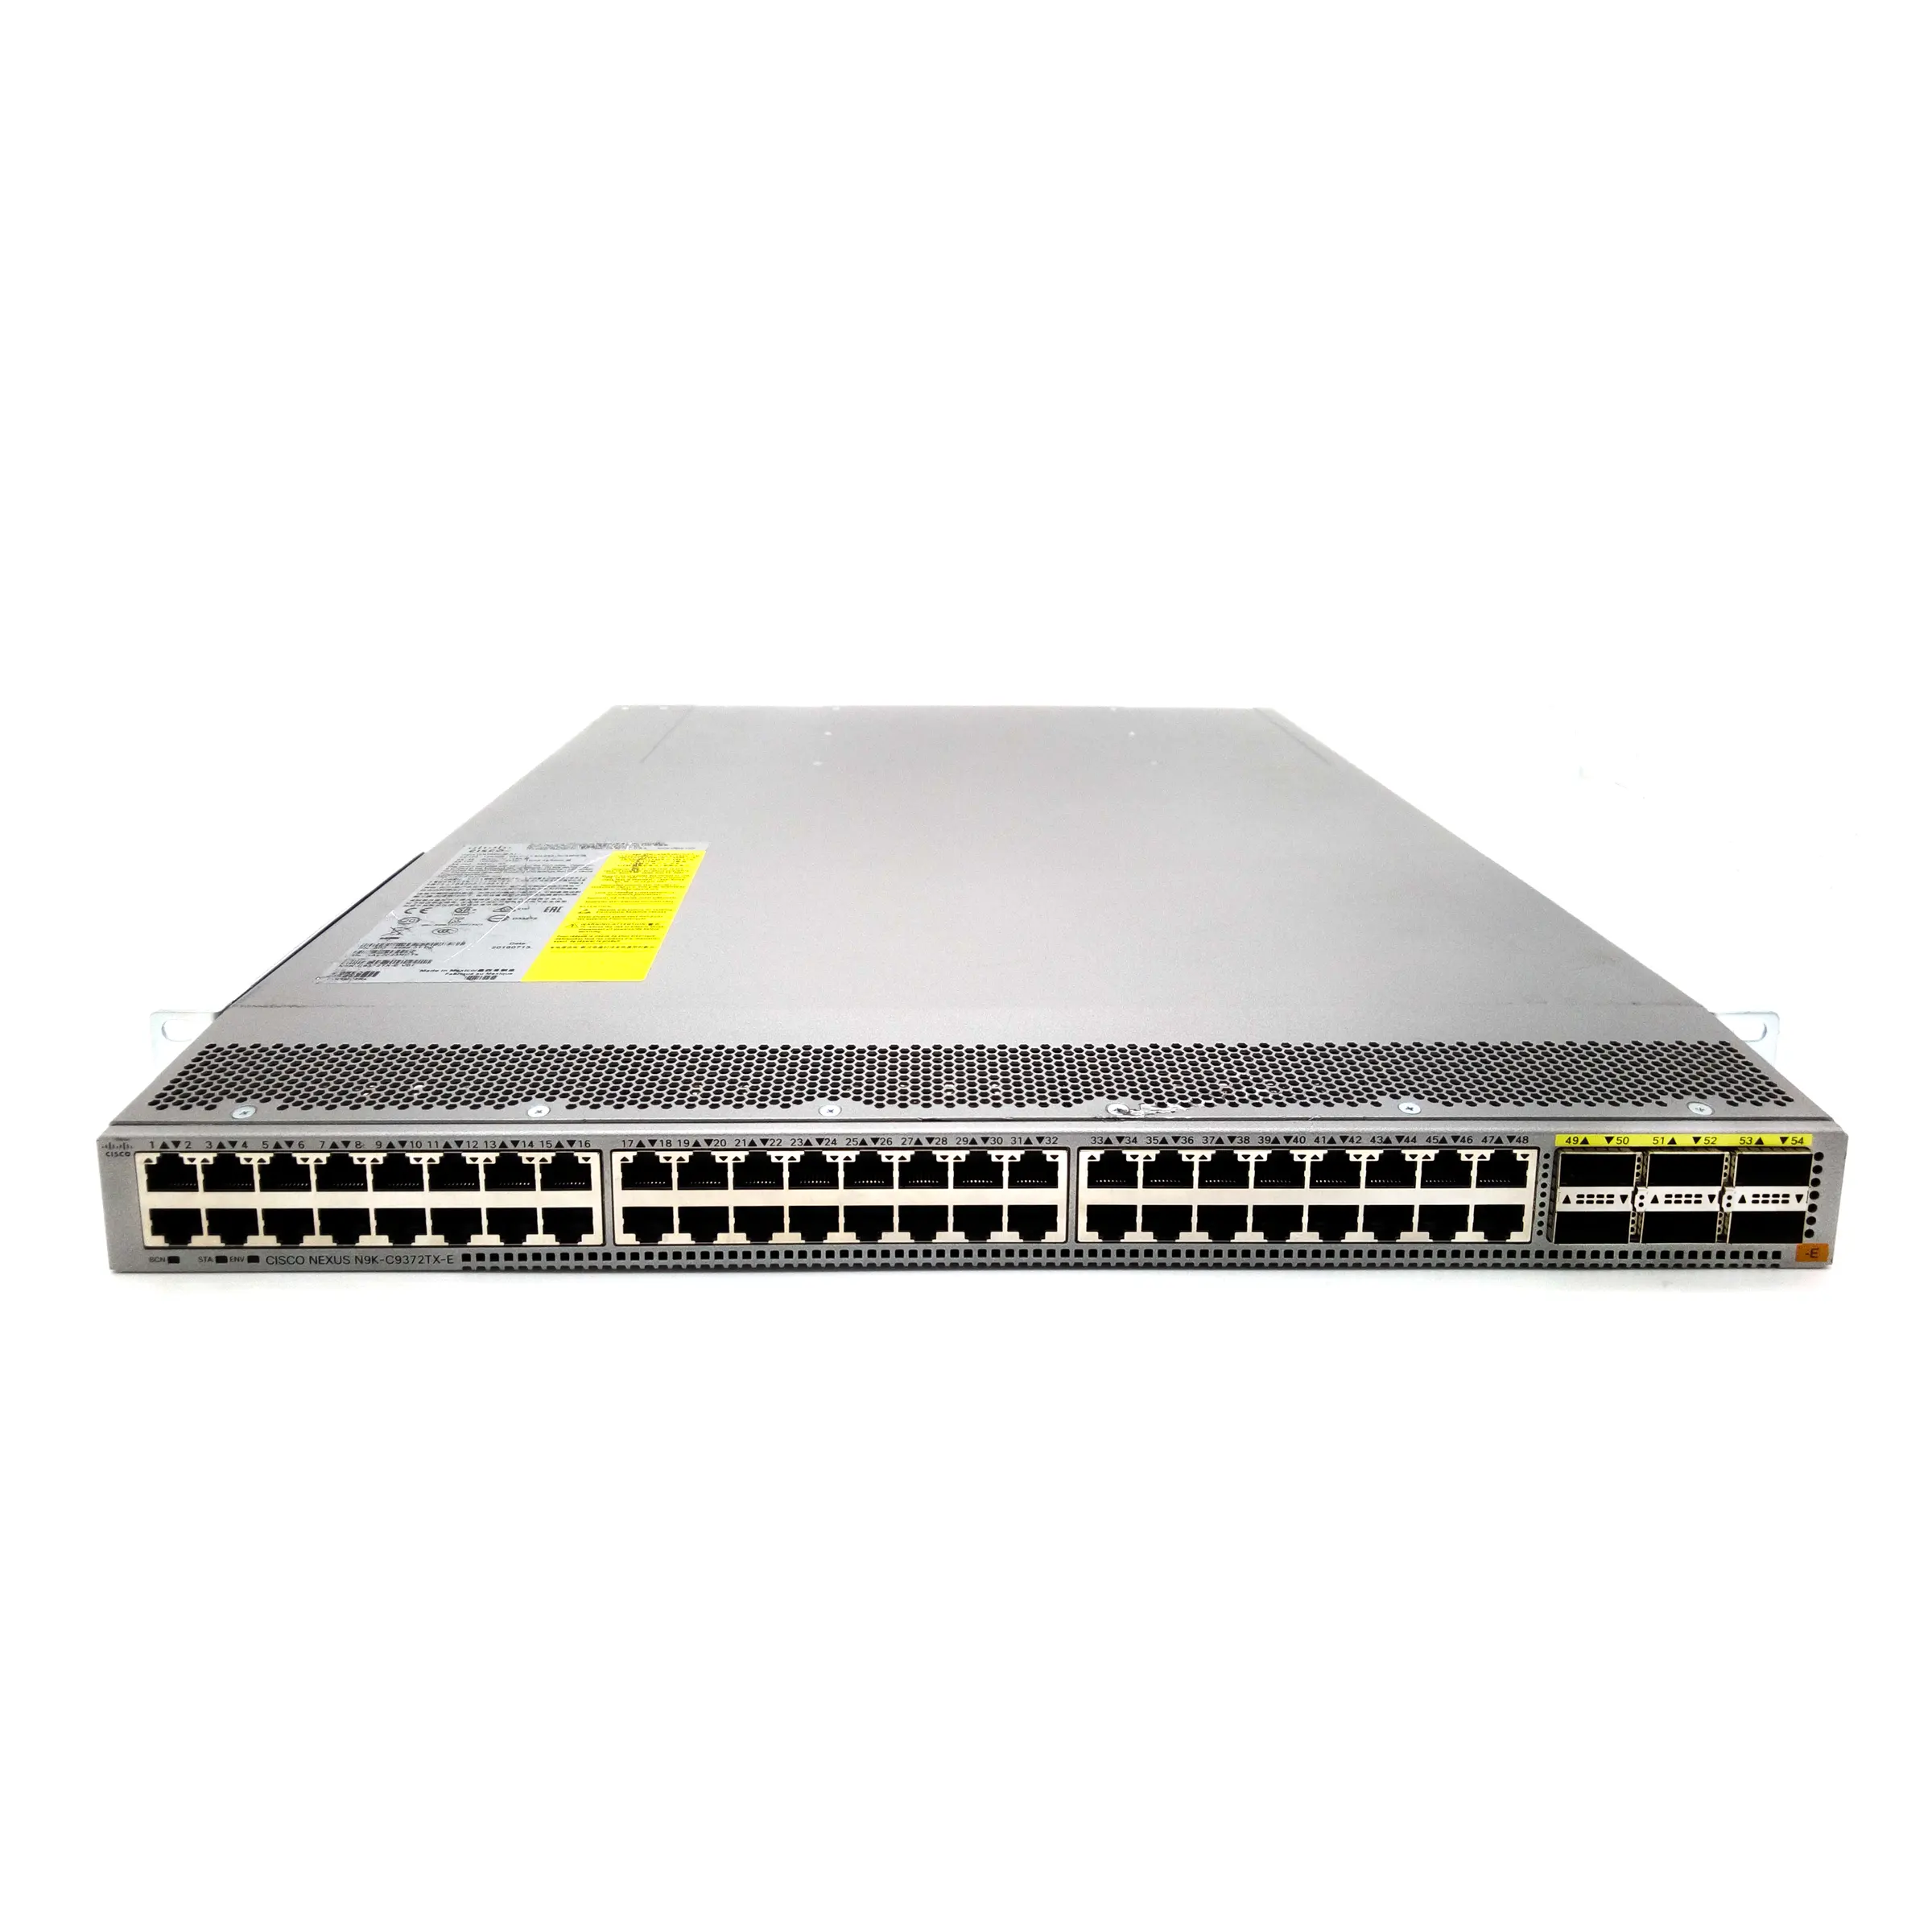 N9K-9372TX-E प्रयुक्त मूल प्रबंधित L3 स्विच 48 10GBase-T पोर्ट और 6 40-गीगाबिट QSFP+ अपलिंक पोर्ट नेक्सस स्विच